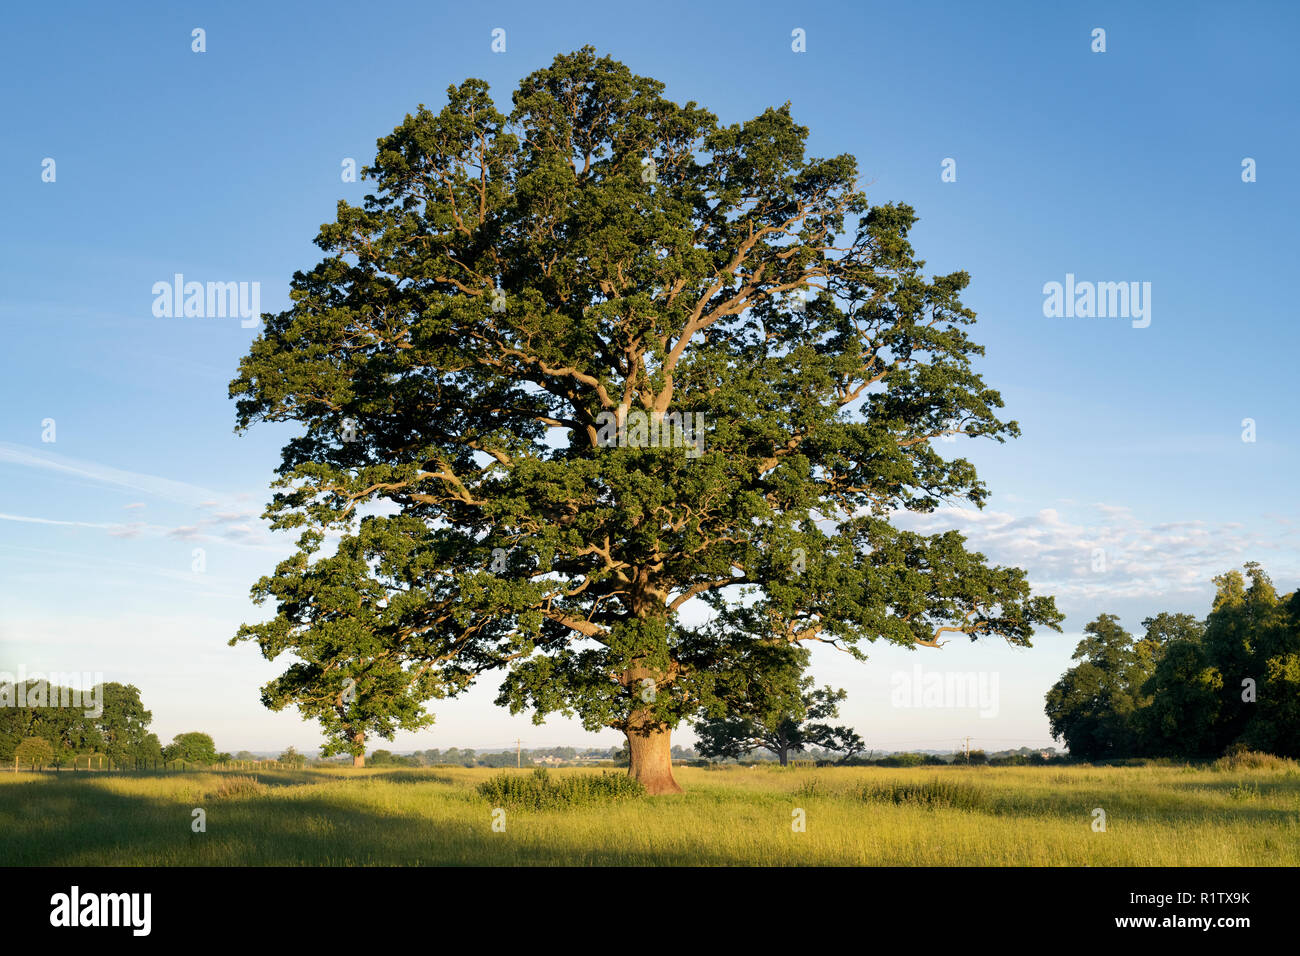 Quercus robur. Arbre de chêne en été dans la campagne anglaise. Rois Sutton, Northamptonshire. UK. Une scène prises à différentes saisons Banque D'Images